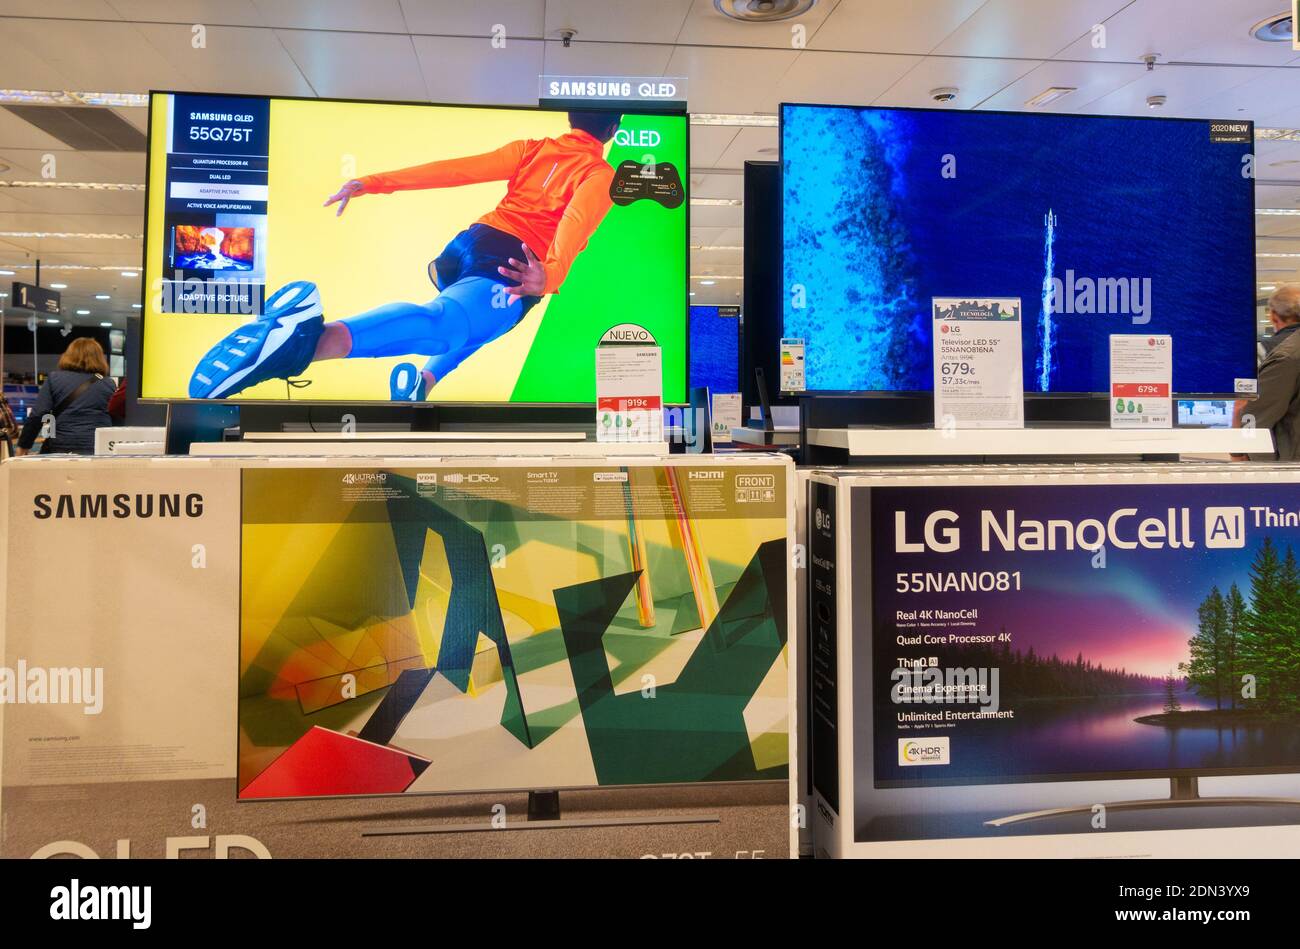 LG Nano Cell und Samsung QLED High Definition tv, Fernseher. Stockfoto